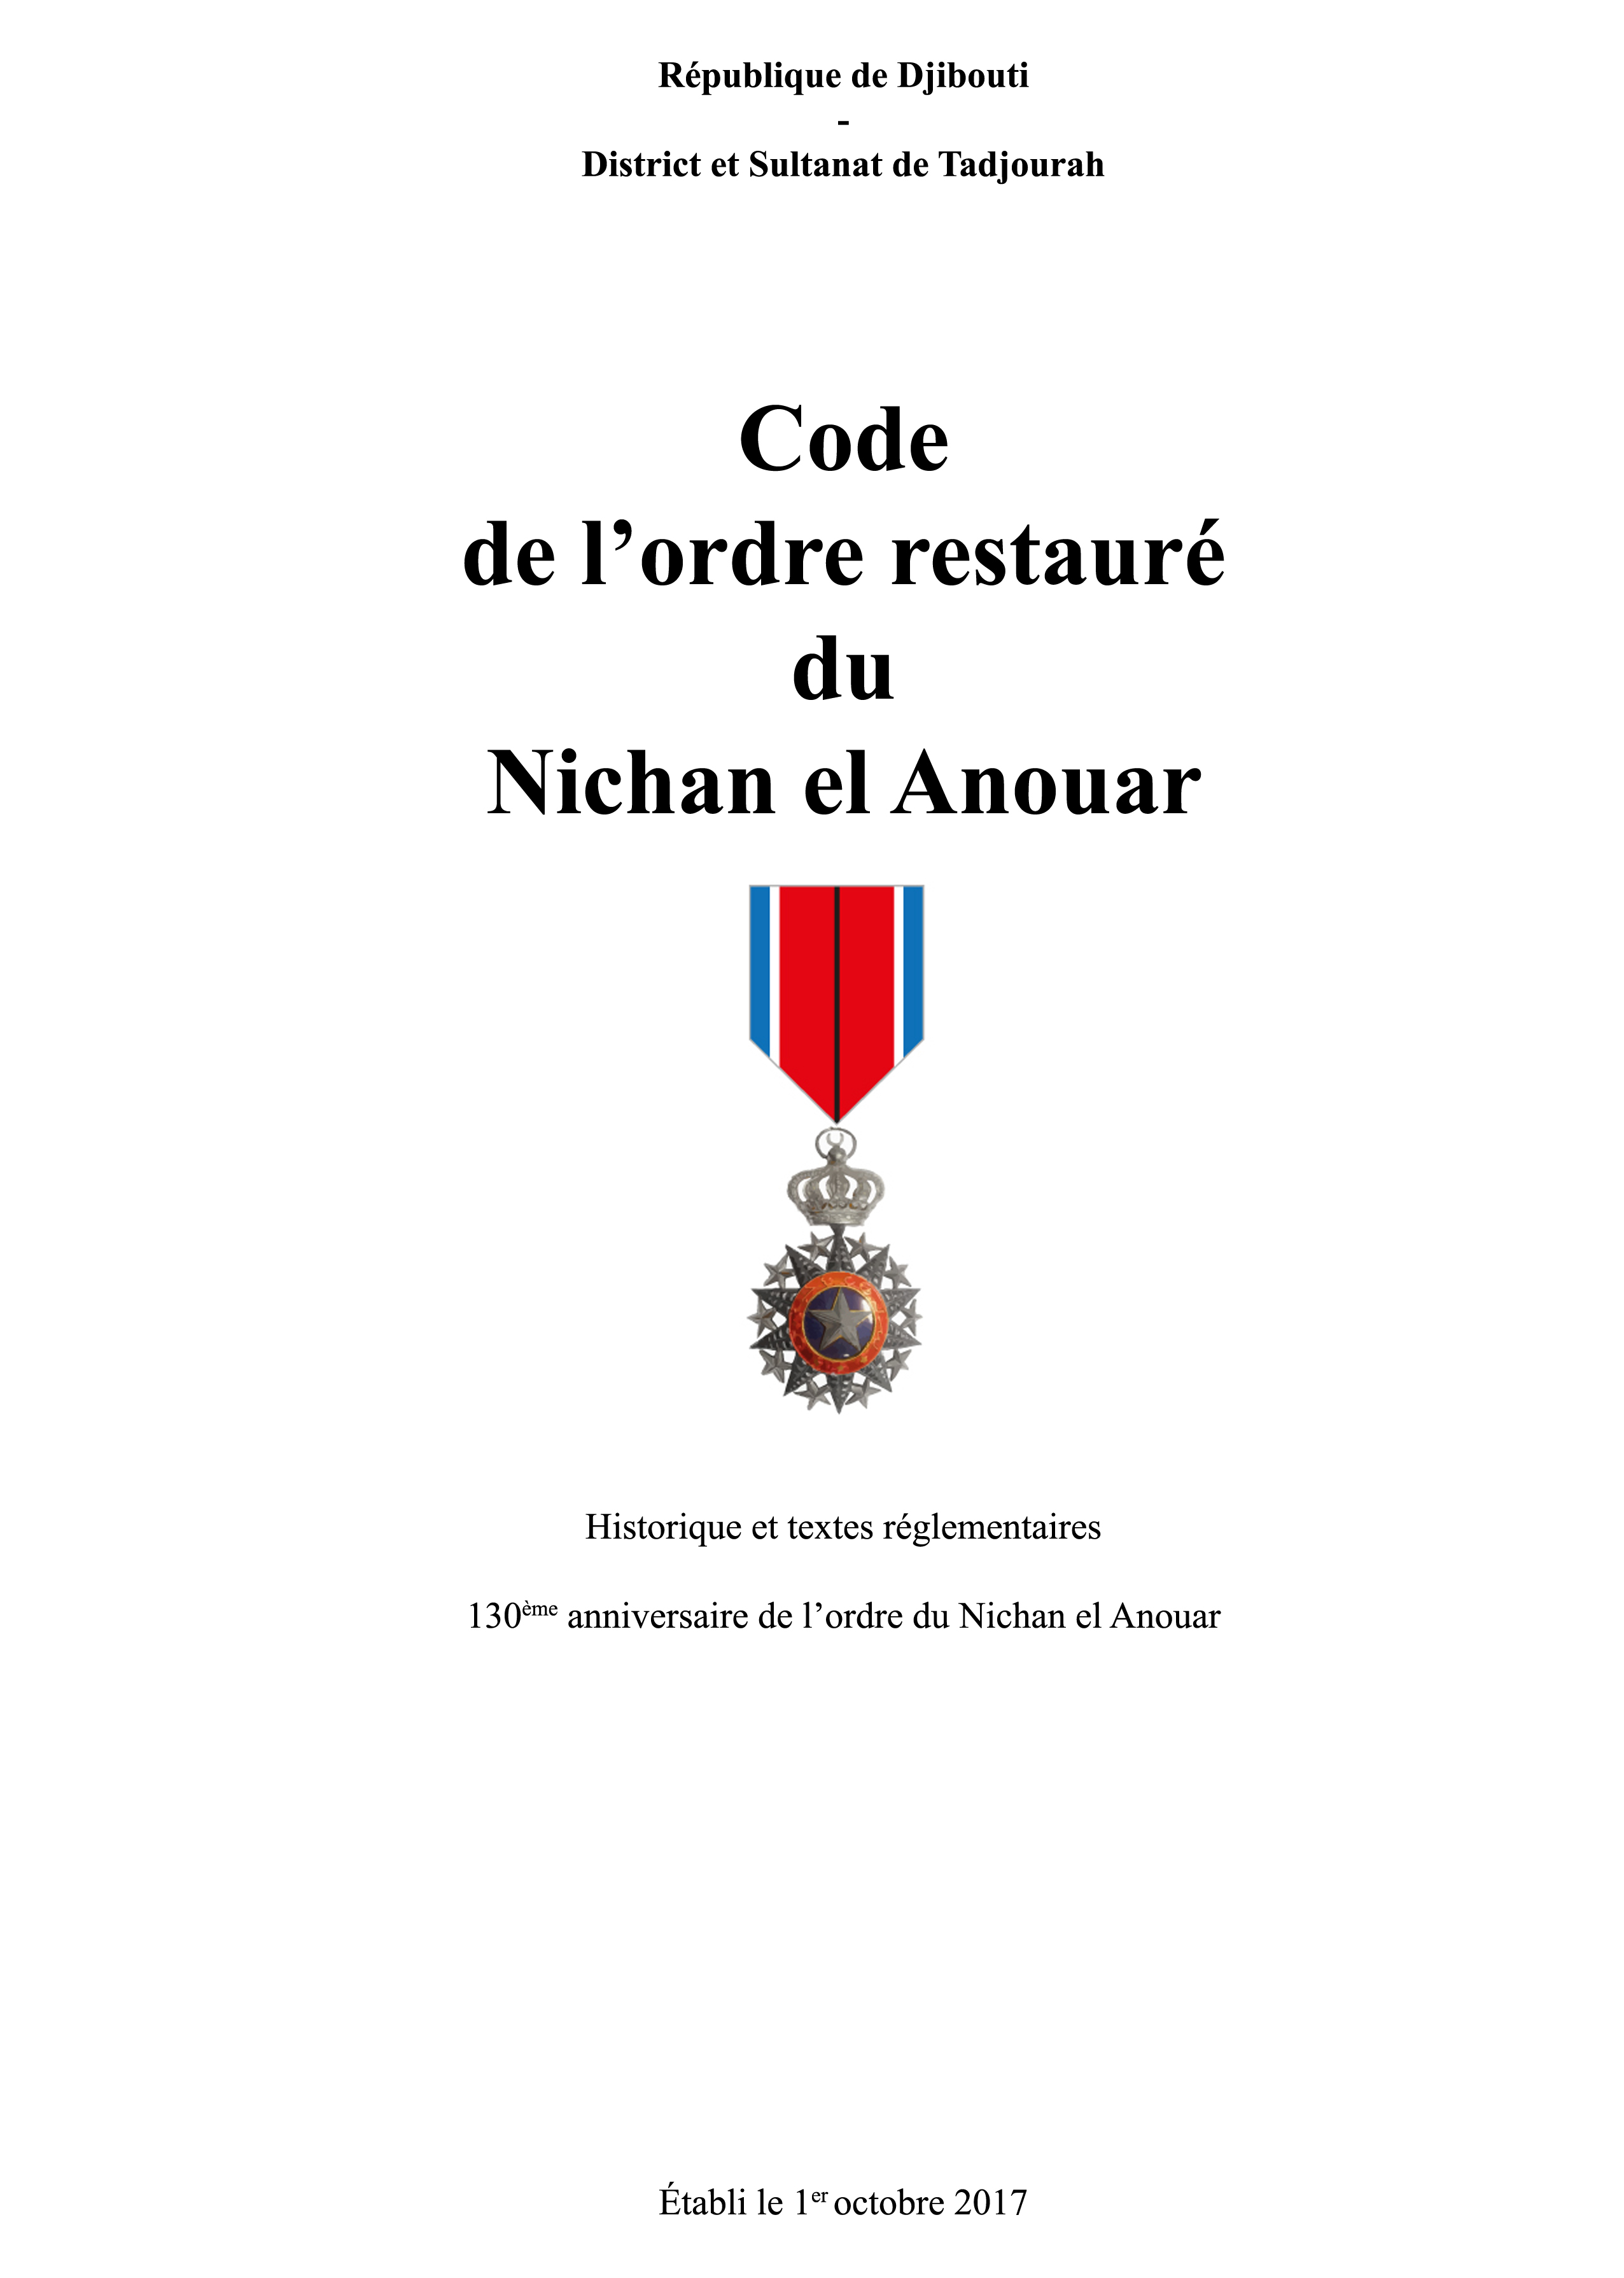 Code du Nichan el Anouar